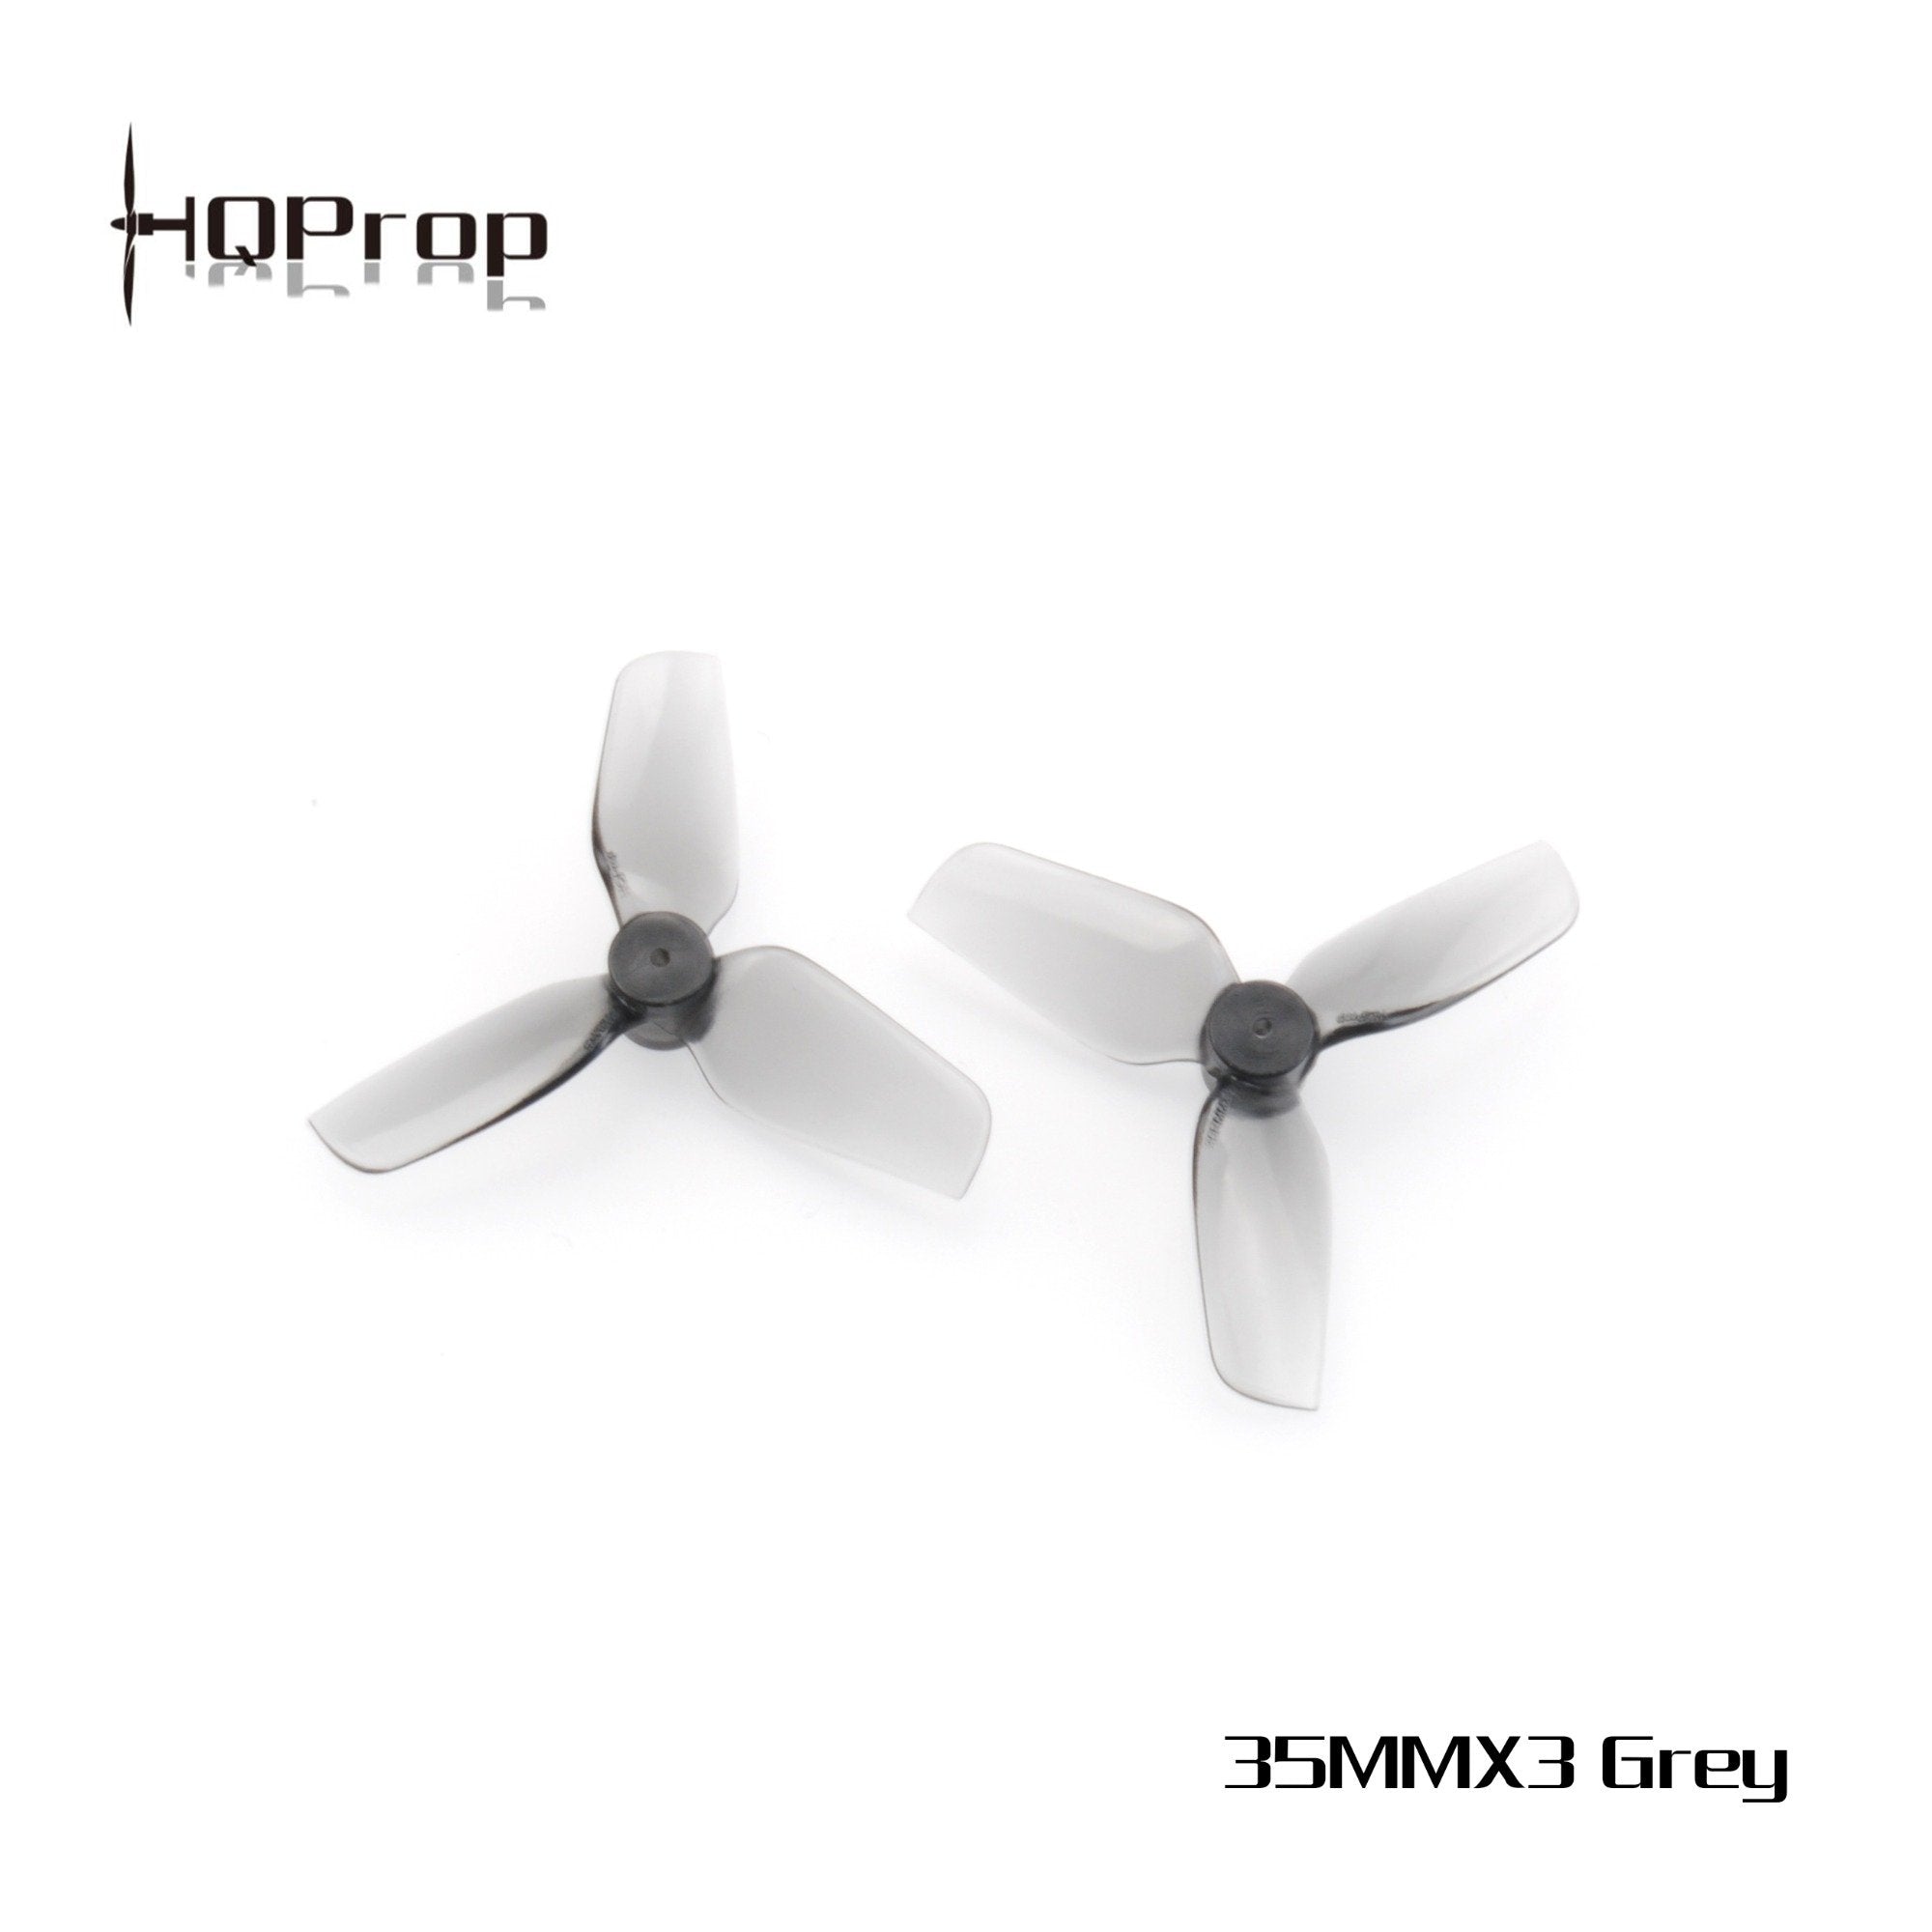 HQProp Micro Whoop Prop 35MMX3 Propellers 2 - HQProp - Drone Authority